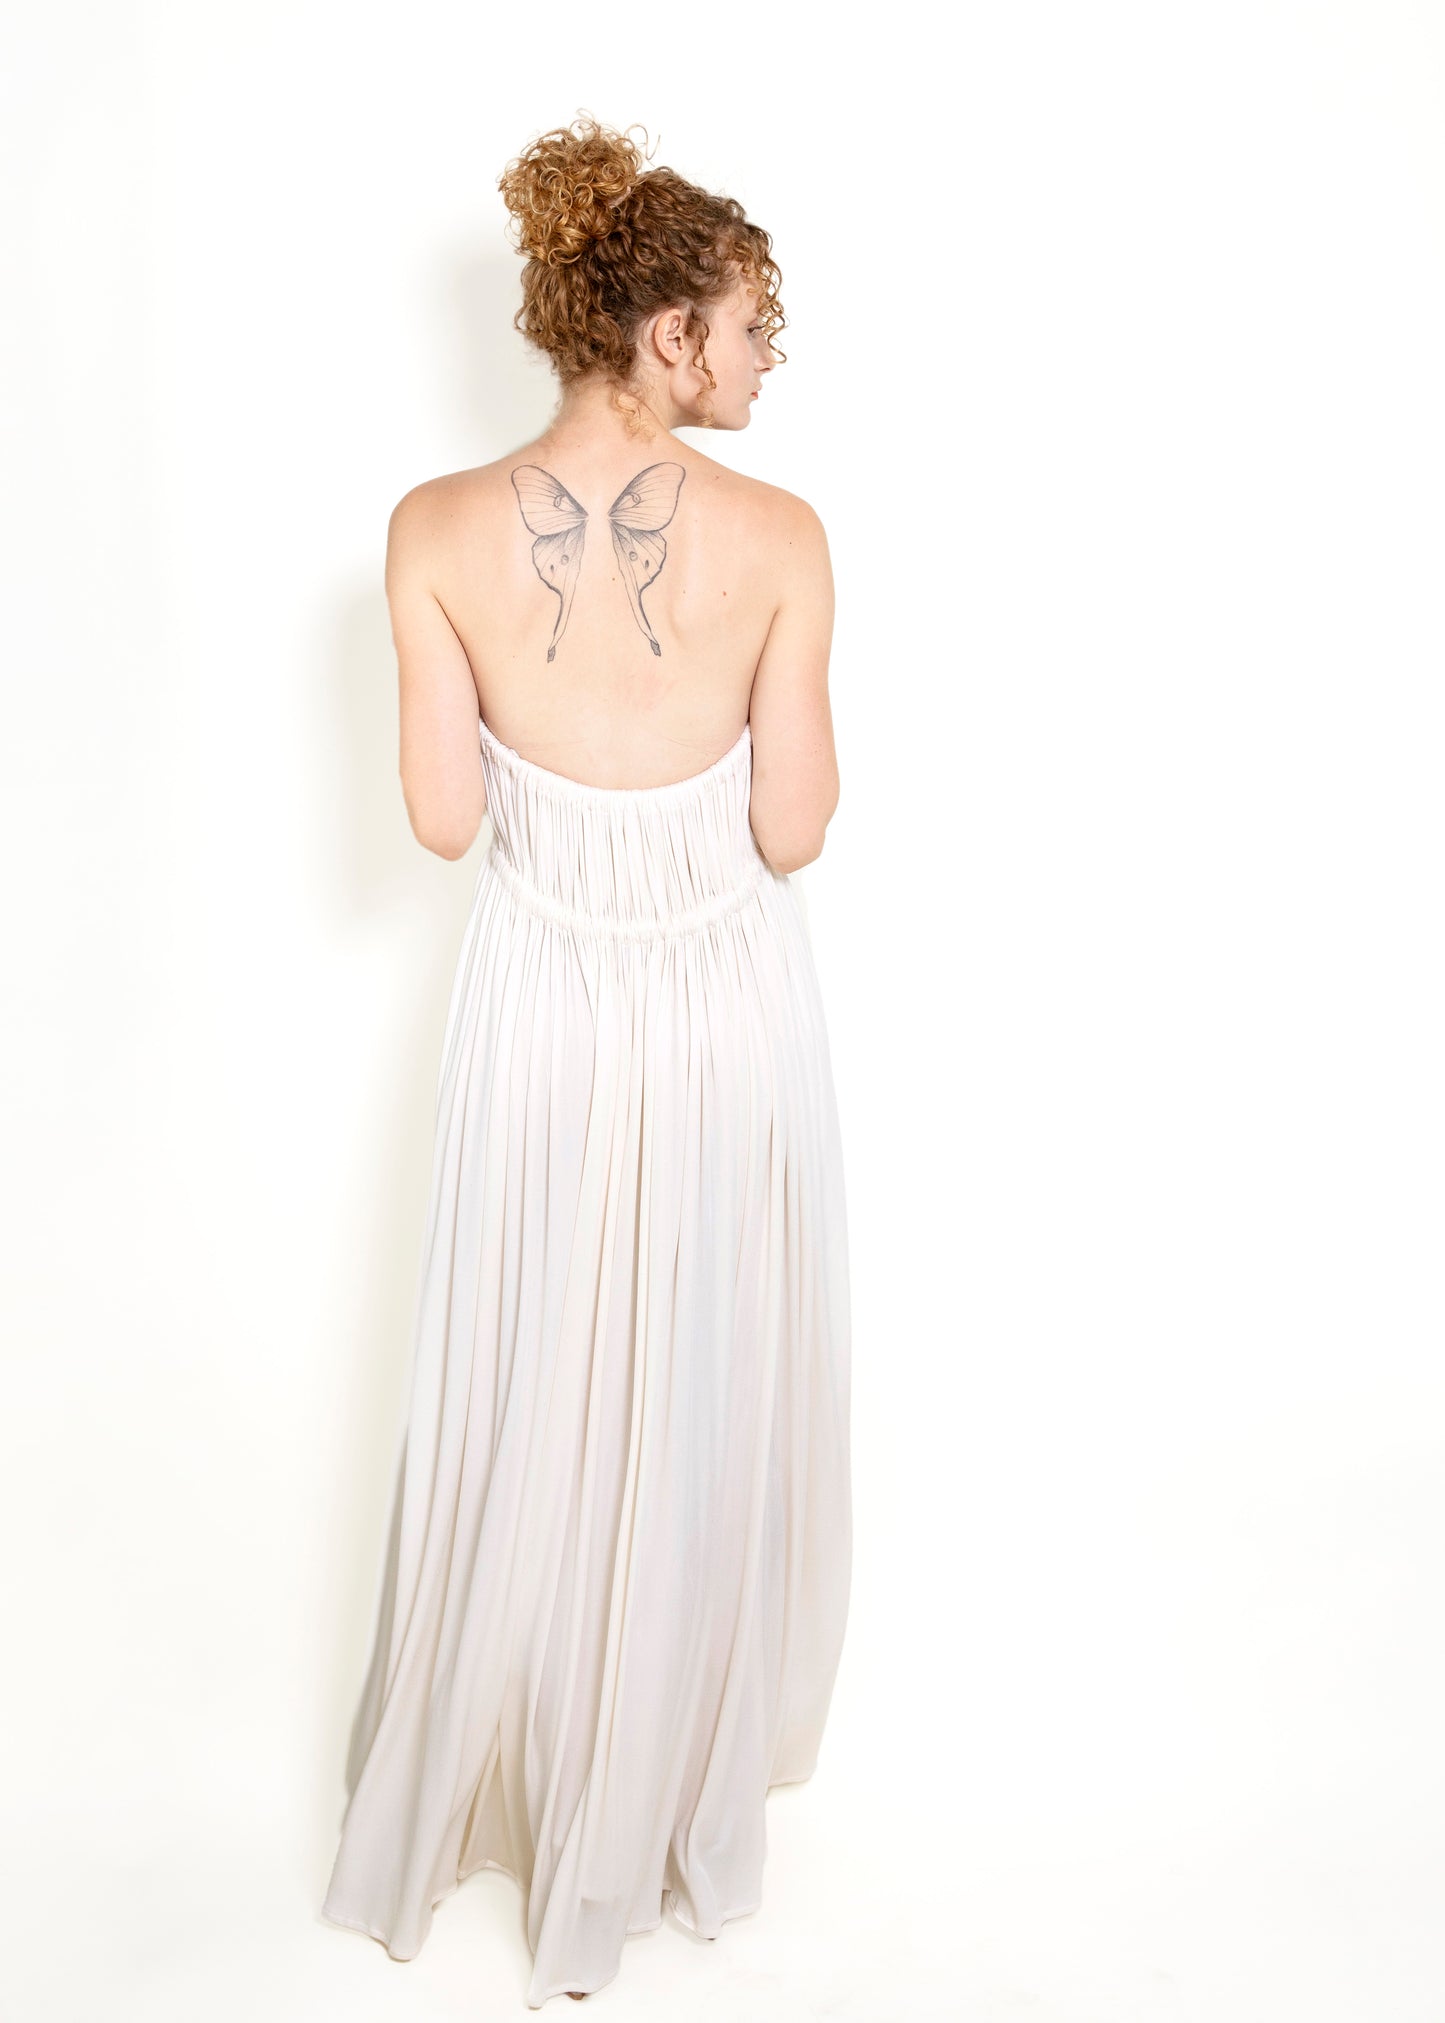 Geoffrey Beene White Grecian Style Strapless Dress